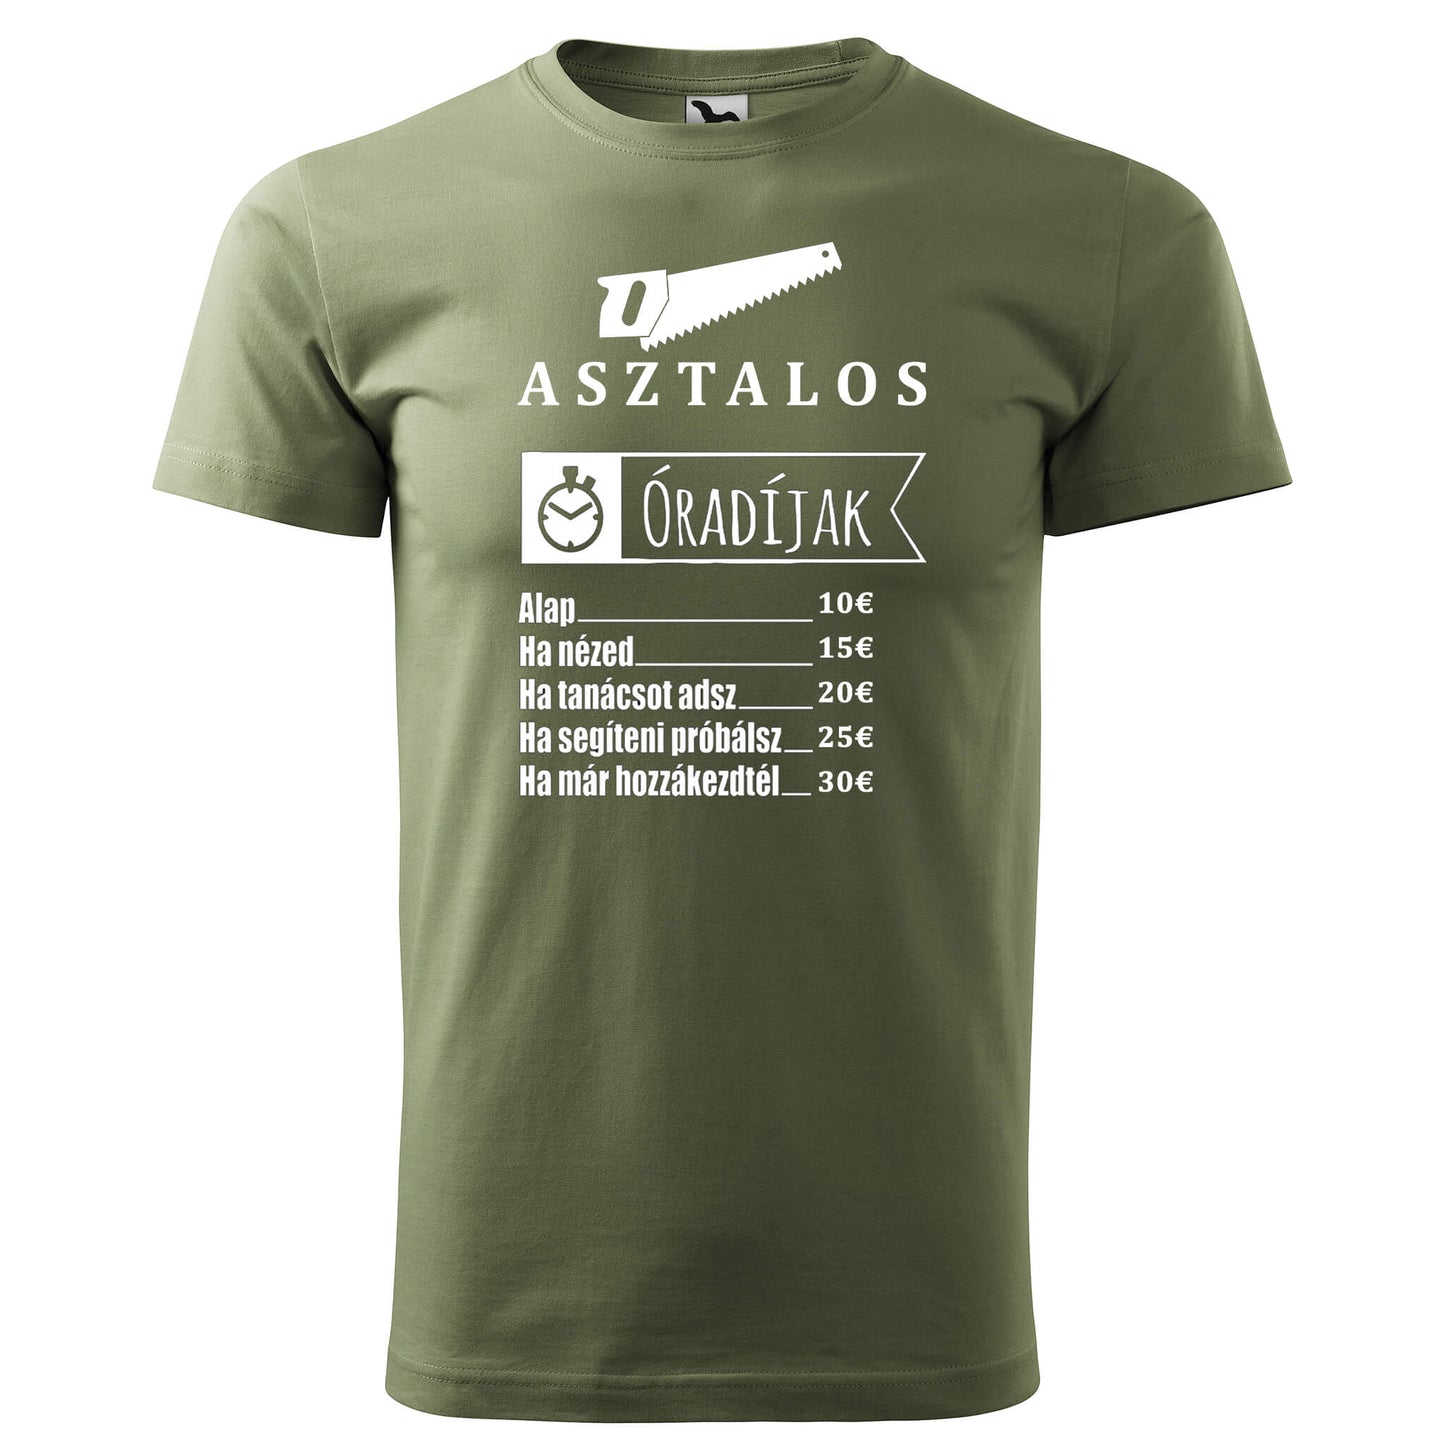 T-shirt - Asztalos óradíjak - rvdesignprint